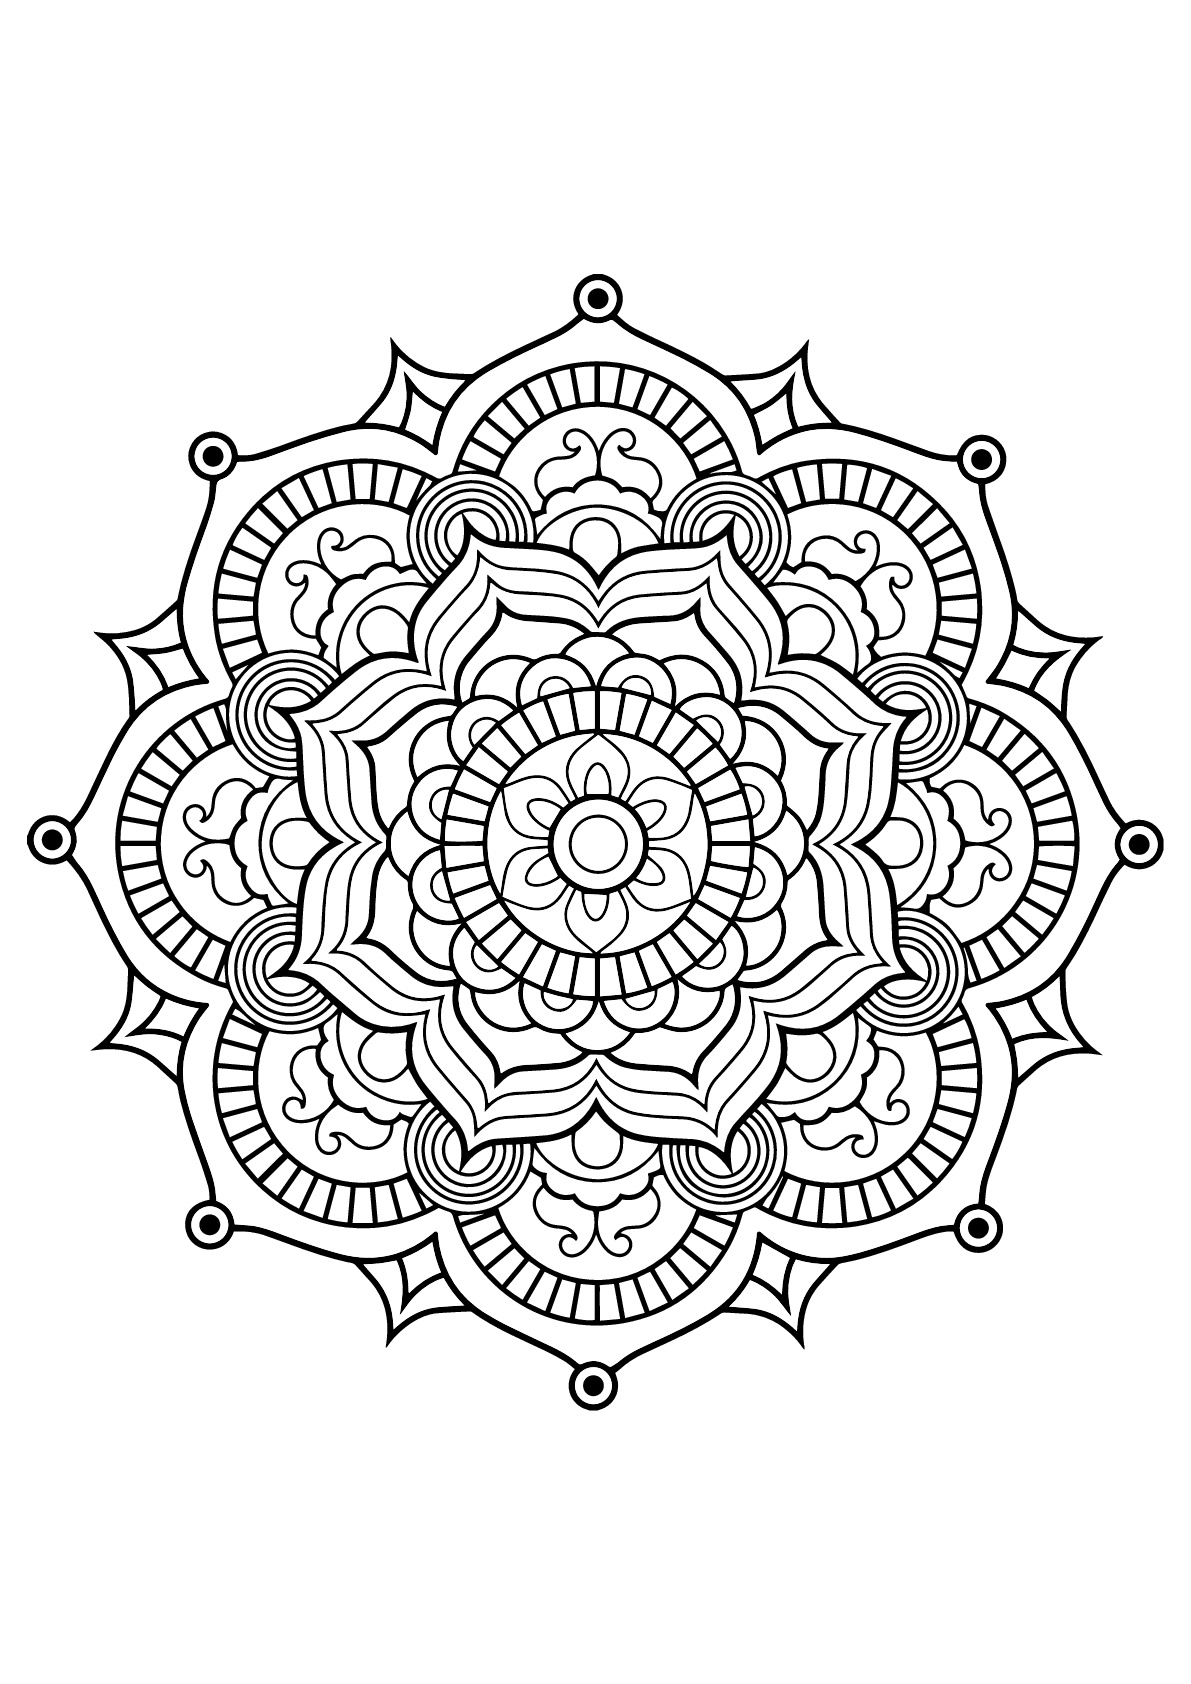 Mandala com padrões vegetais do Livro para colorir grátis para adultos